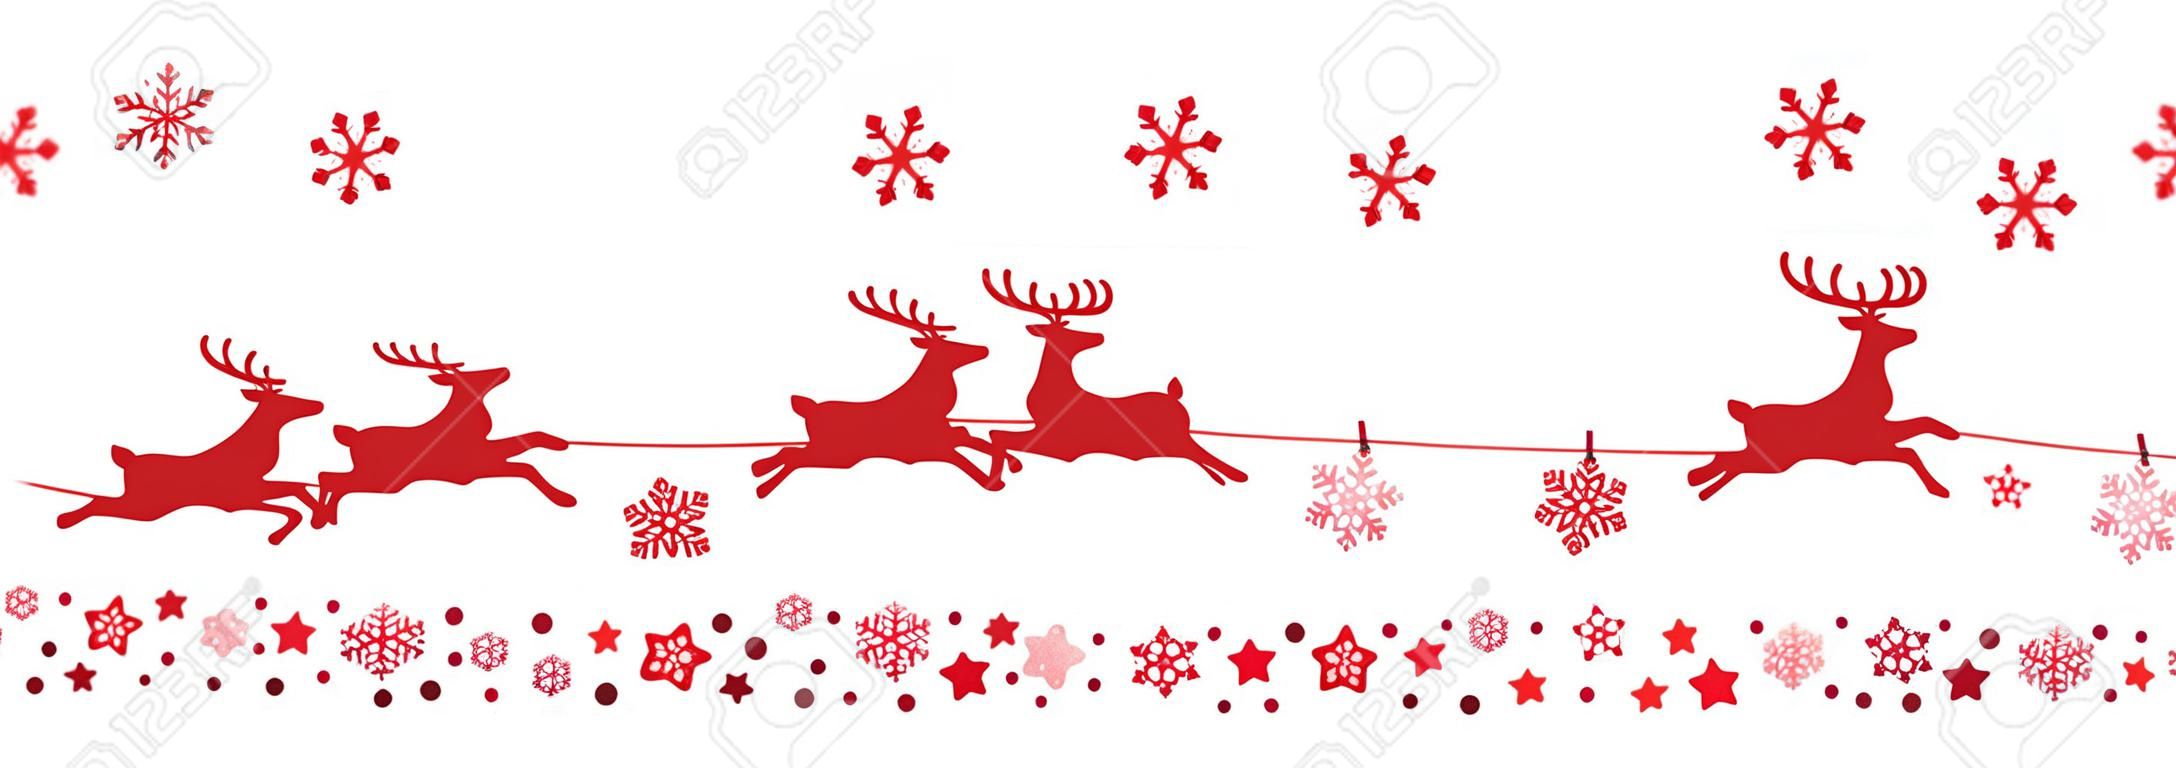 latające renifery sanie Santa czerwone płatki śniegu sylwetka